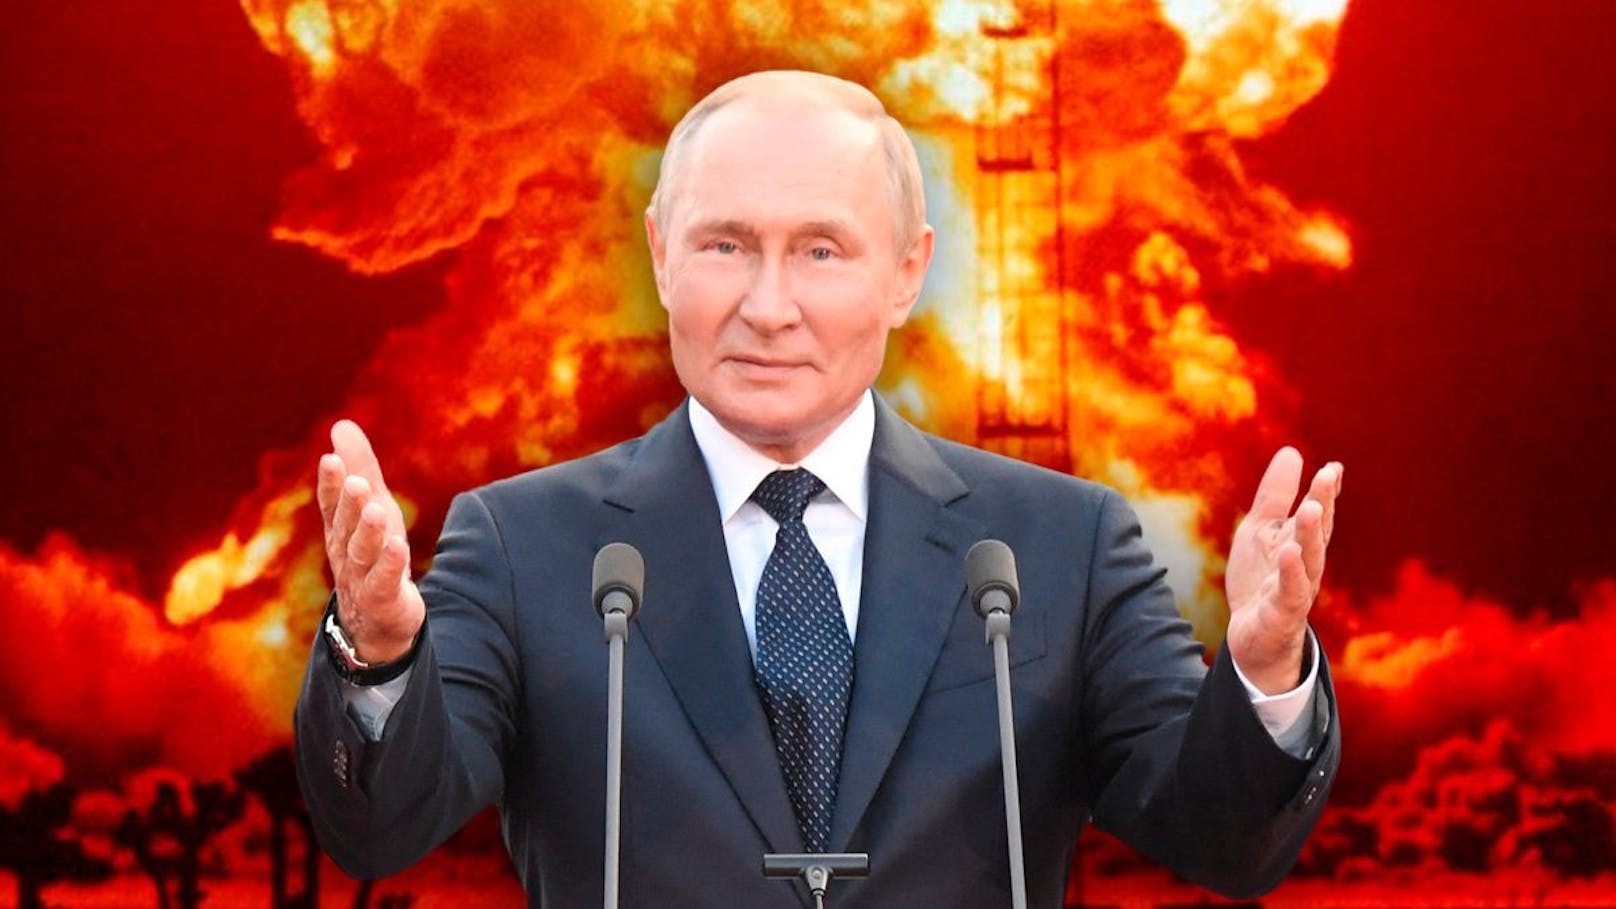 Atom-Schock – Putin schickt Nuklearwaffen nach Belarus